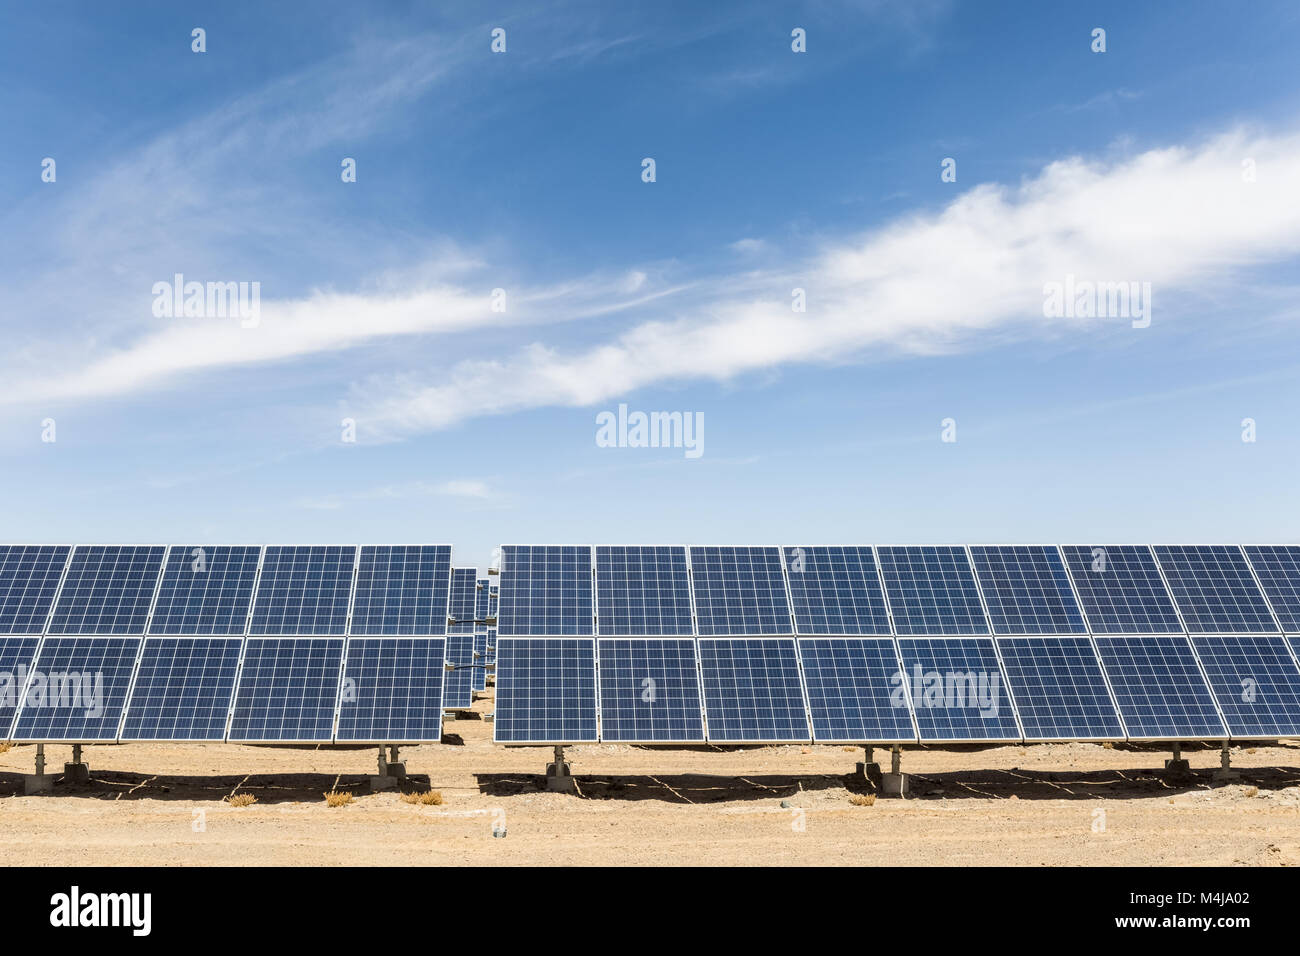 solar energy on gobi desert Stock Photo